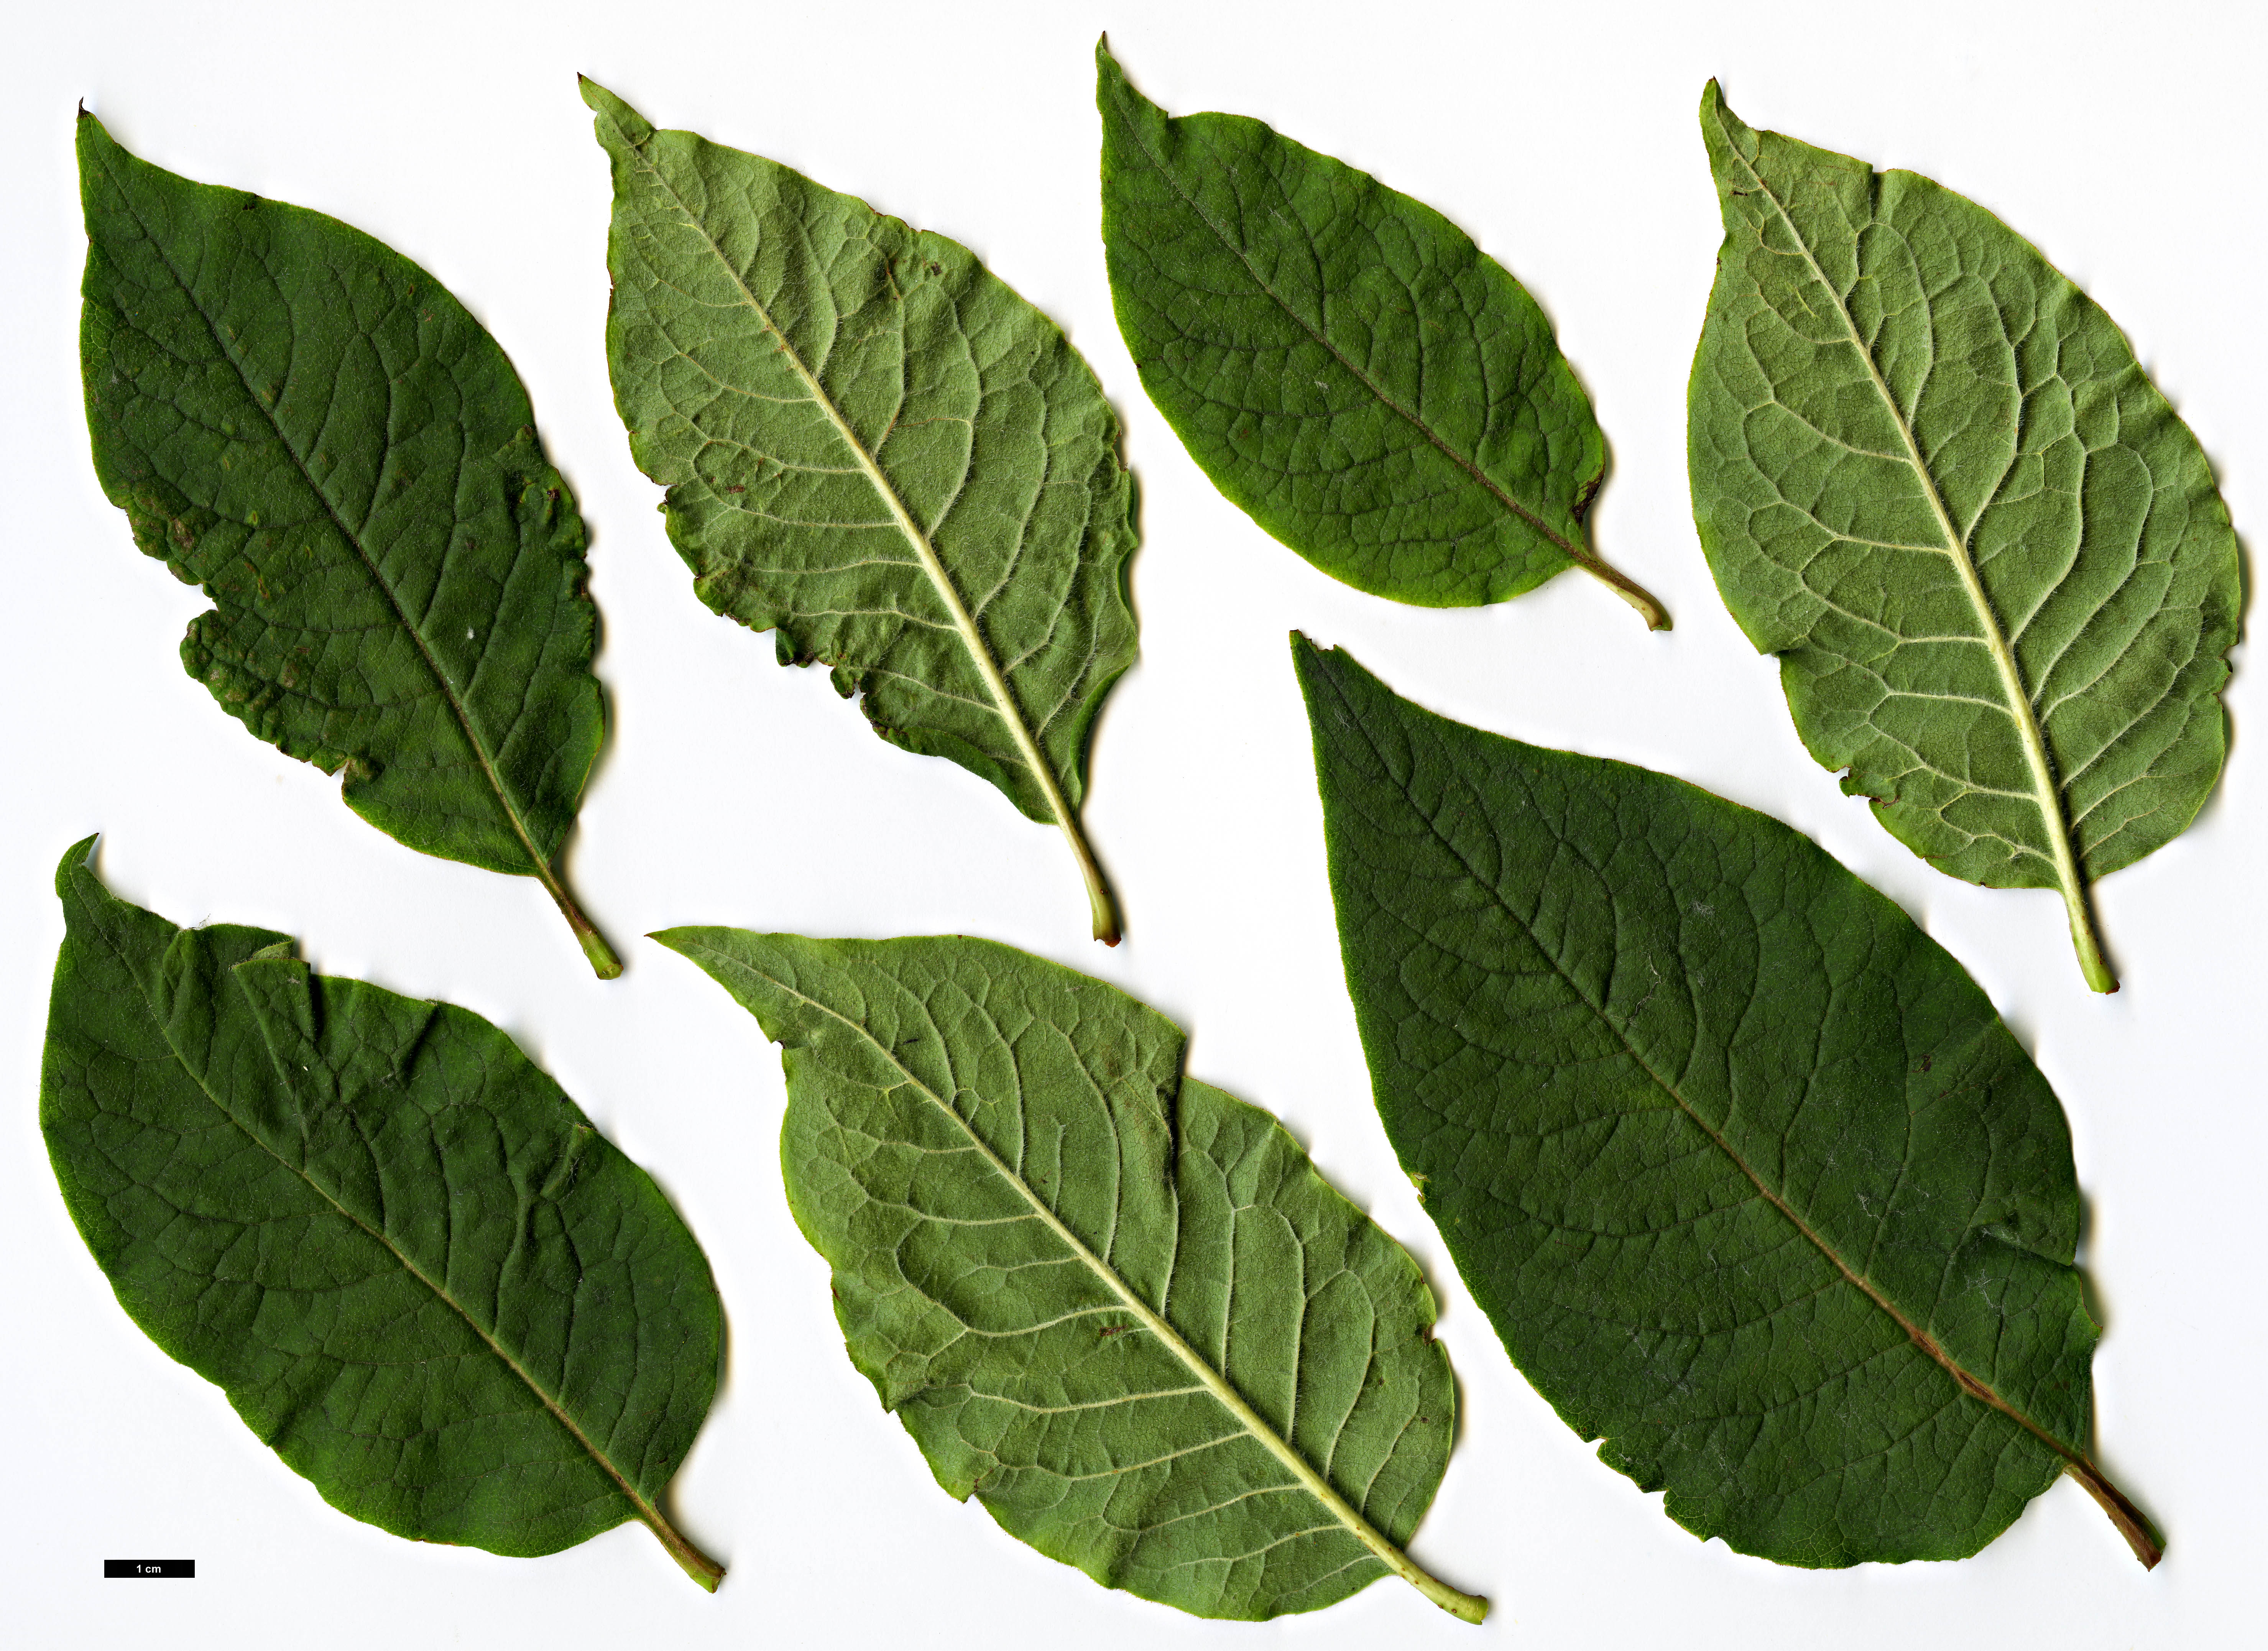 High resolution image: Family: Oleaceae - Genus: Syringa - Taxon: komarowii